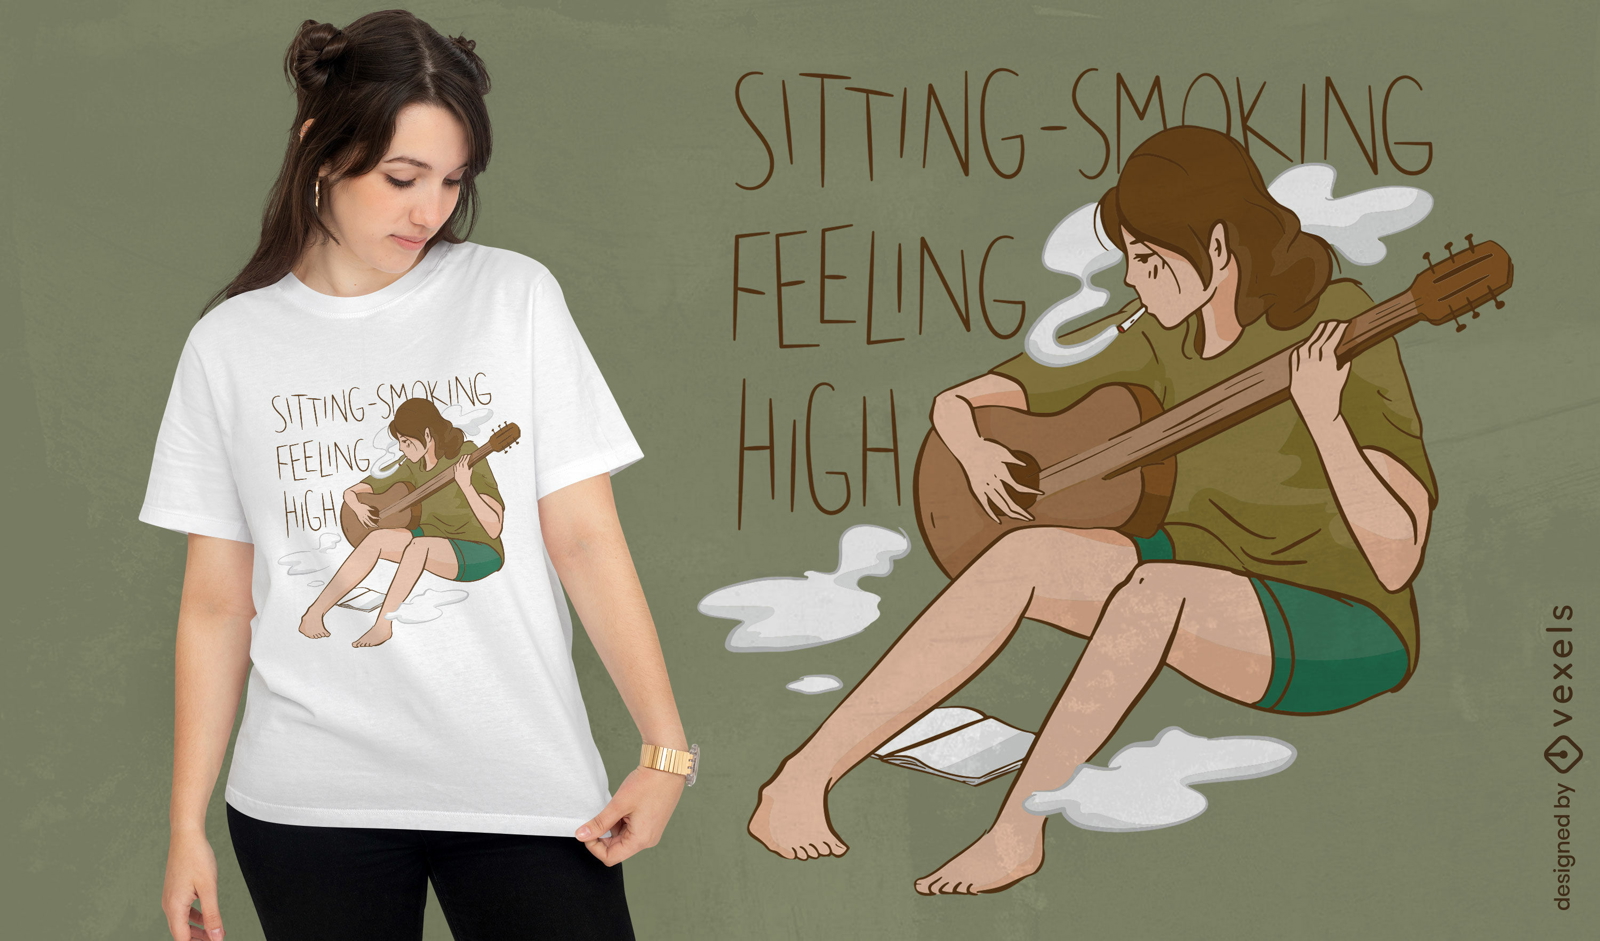 Mädchen, das Gitarre spielt und T-Shirt-Design raucht